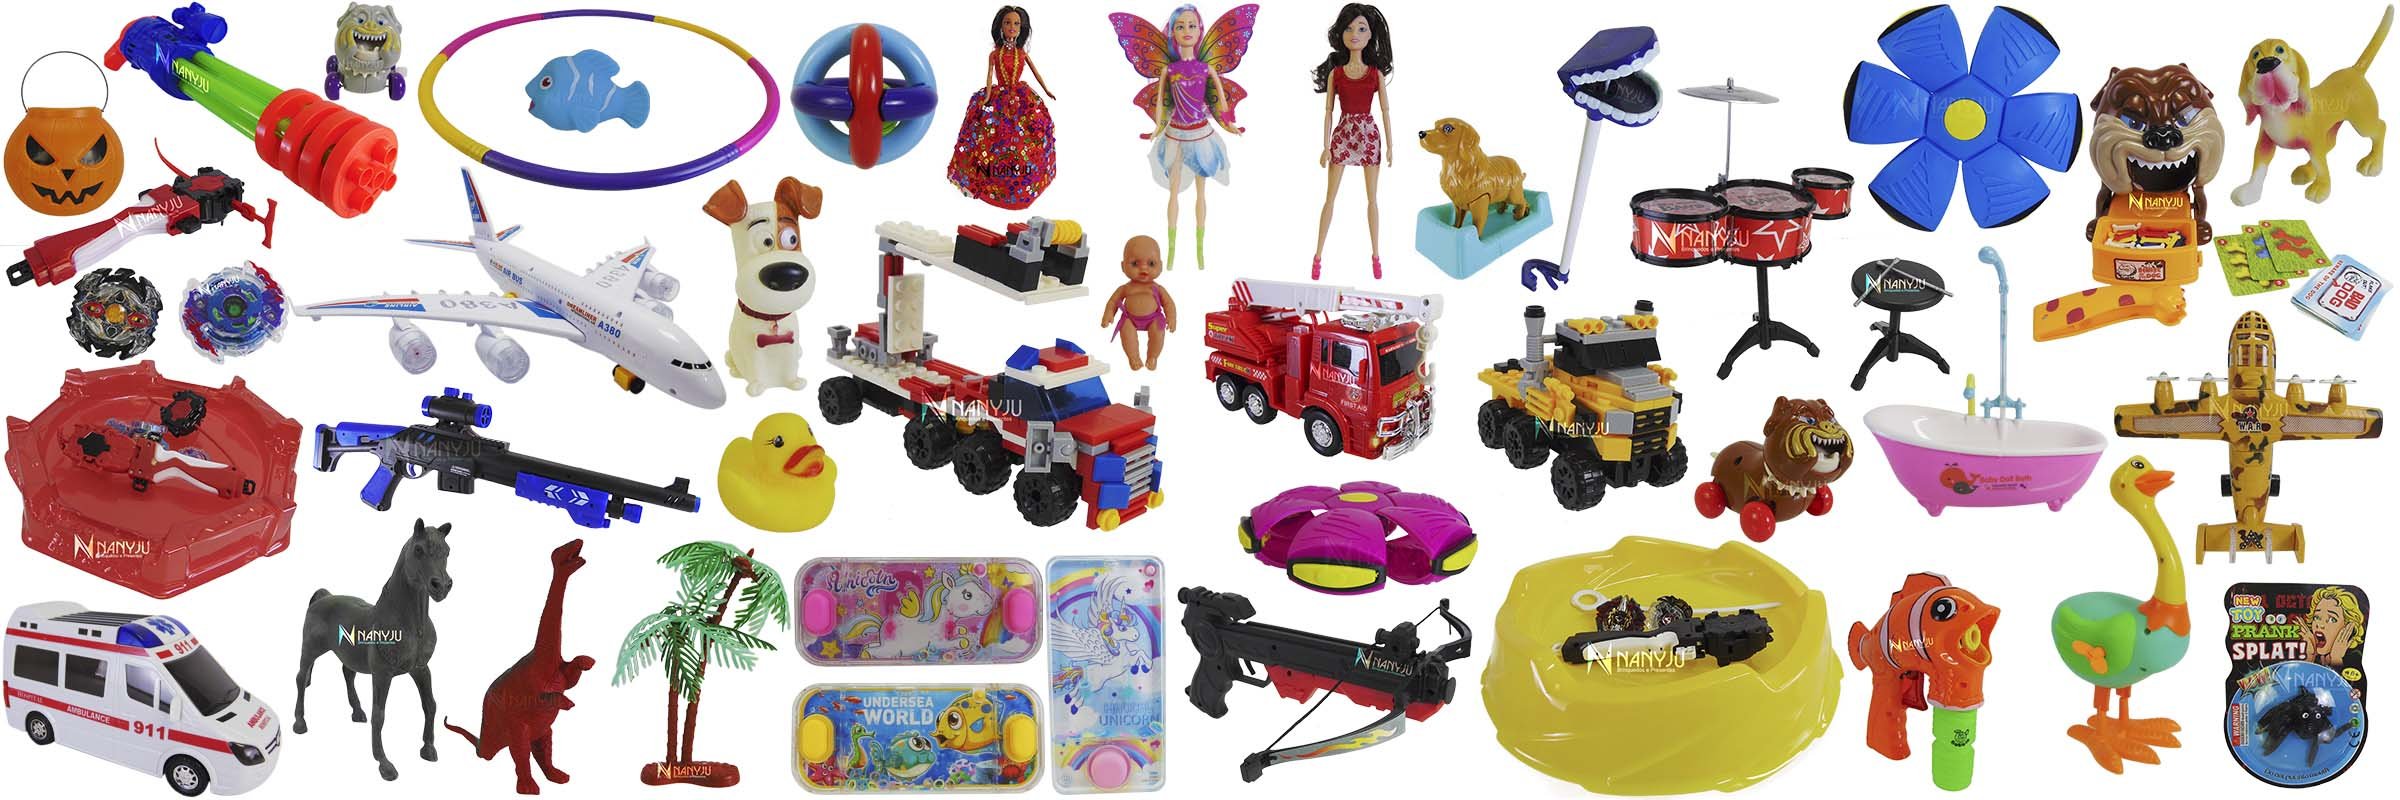 Kit Com 4 Motos de Brinquedo Corrida Miniatura Infantil para Crianças  Motinha Plastico Coloridas Coleção